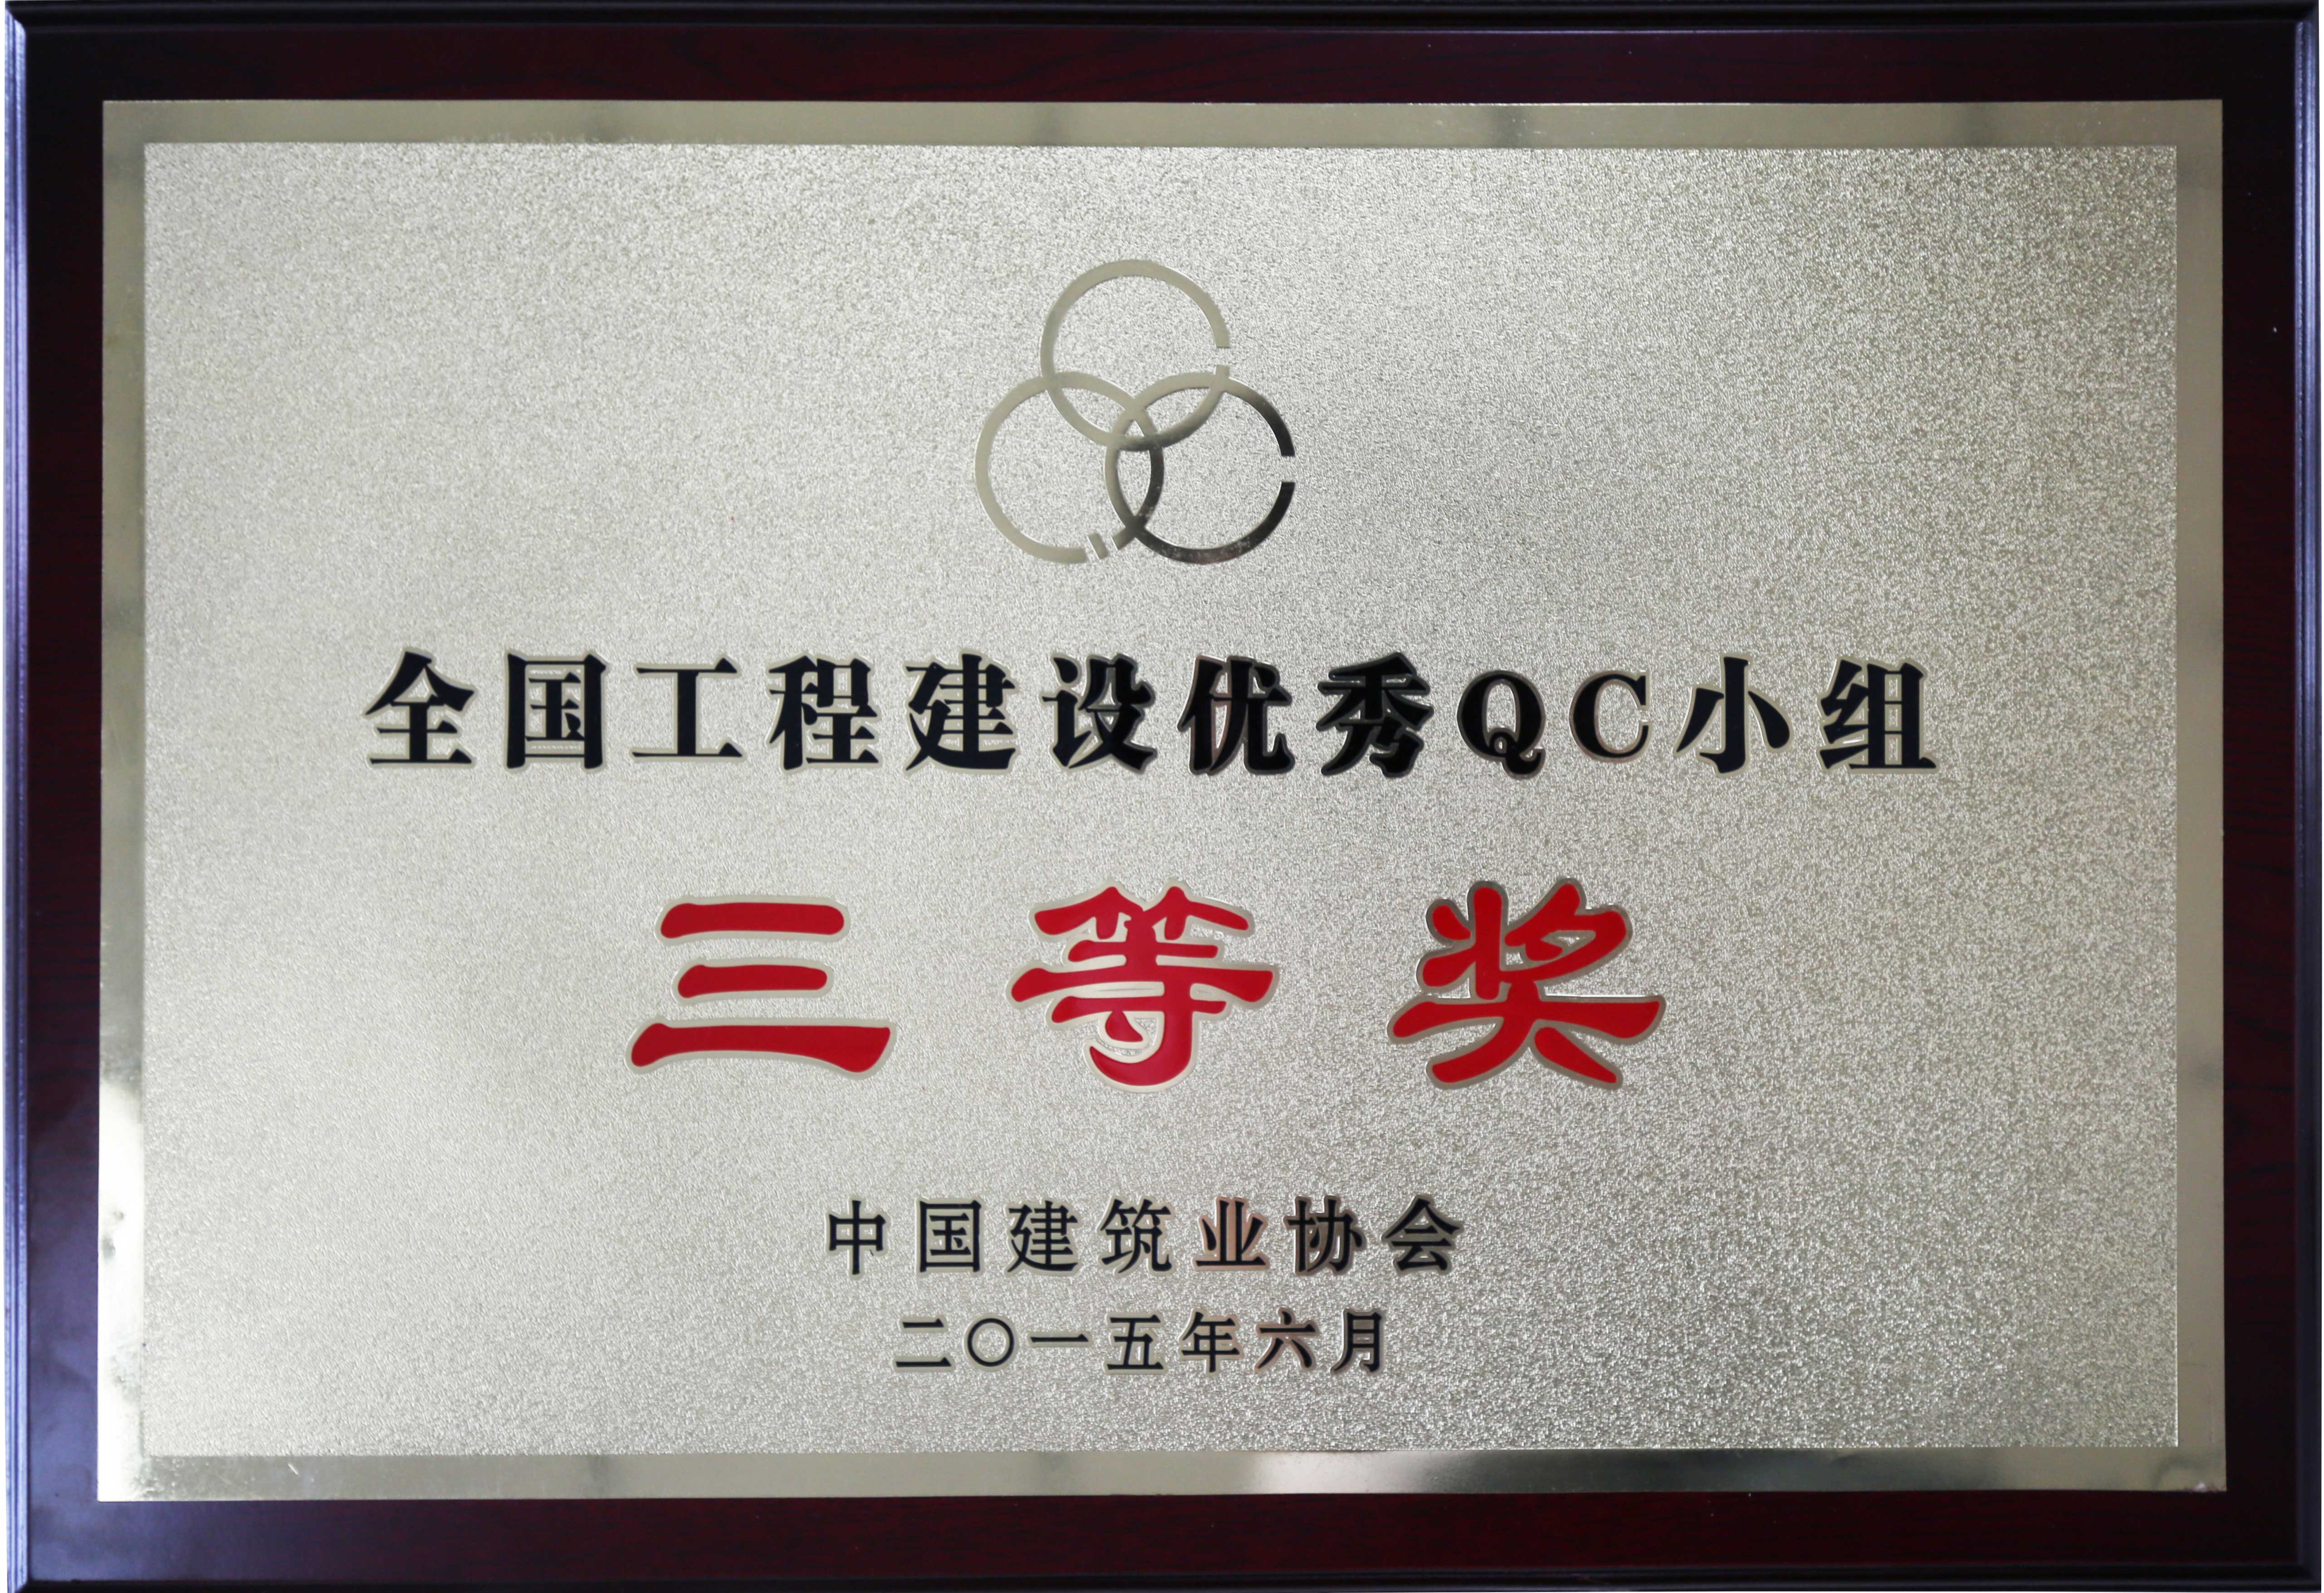 大元集团荣获全国工程优秀QC小组三等奖